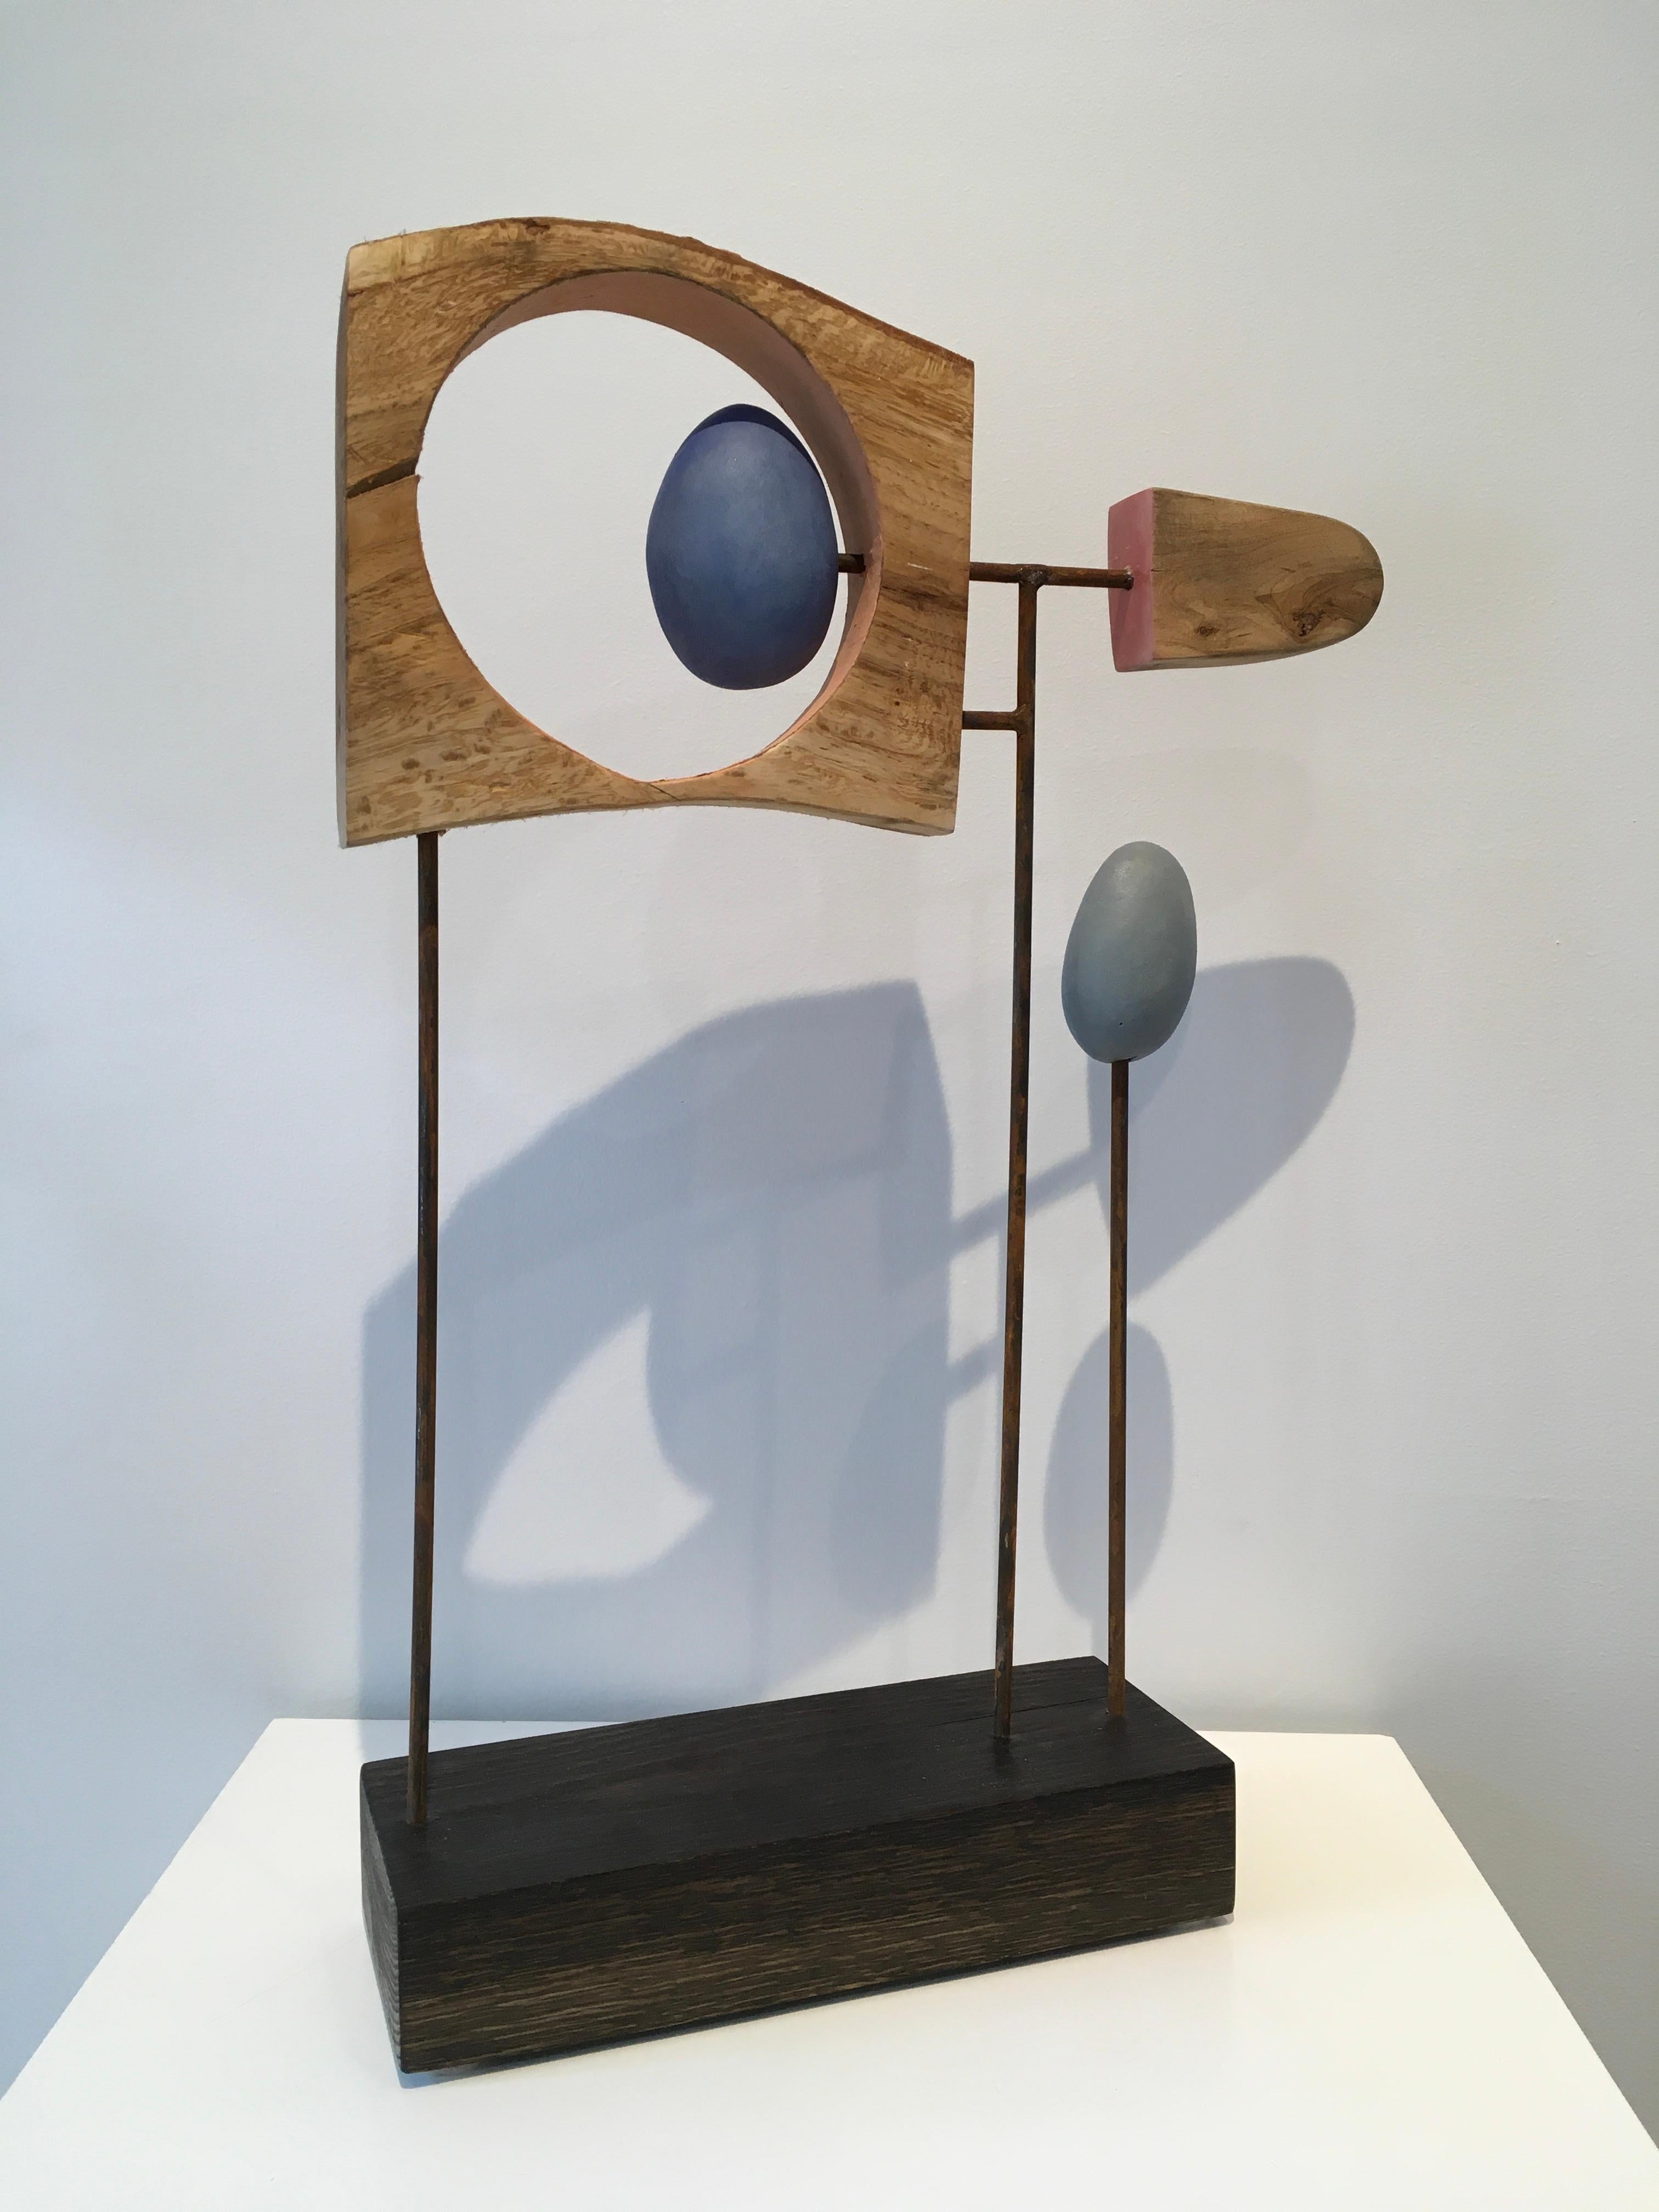 La sculpture abstraite en matériaux mixtes de John WOLFS, "Untitled Assemblage #S 3-23", réunit du bois, de l'acier, des éléments en céramique et de la peinture acrylique. Les couleurs chaudes du bois et des éléments en céramique peinte adoucissent